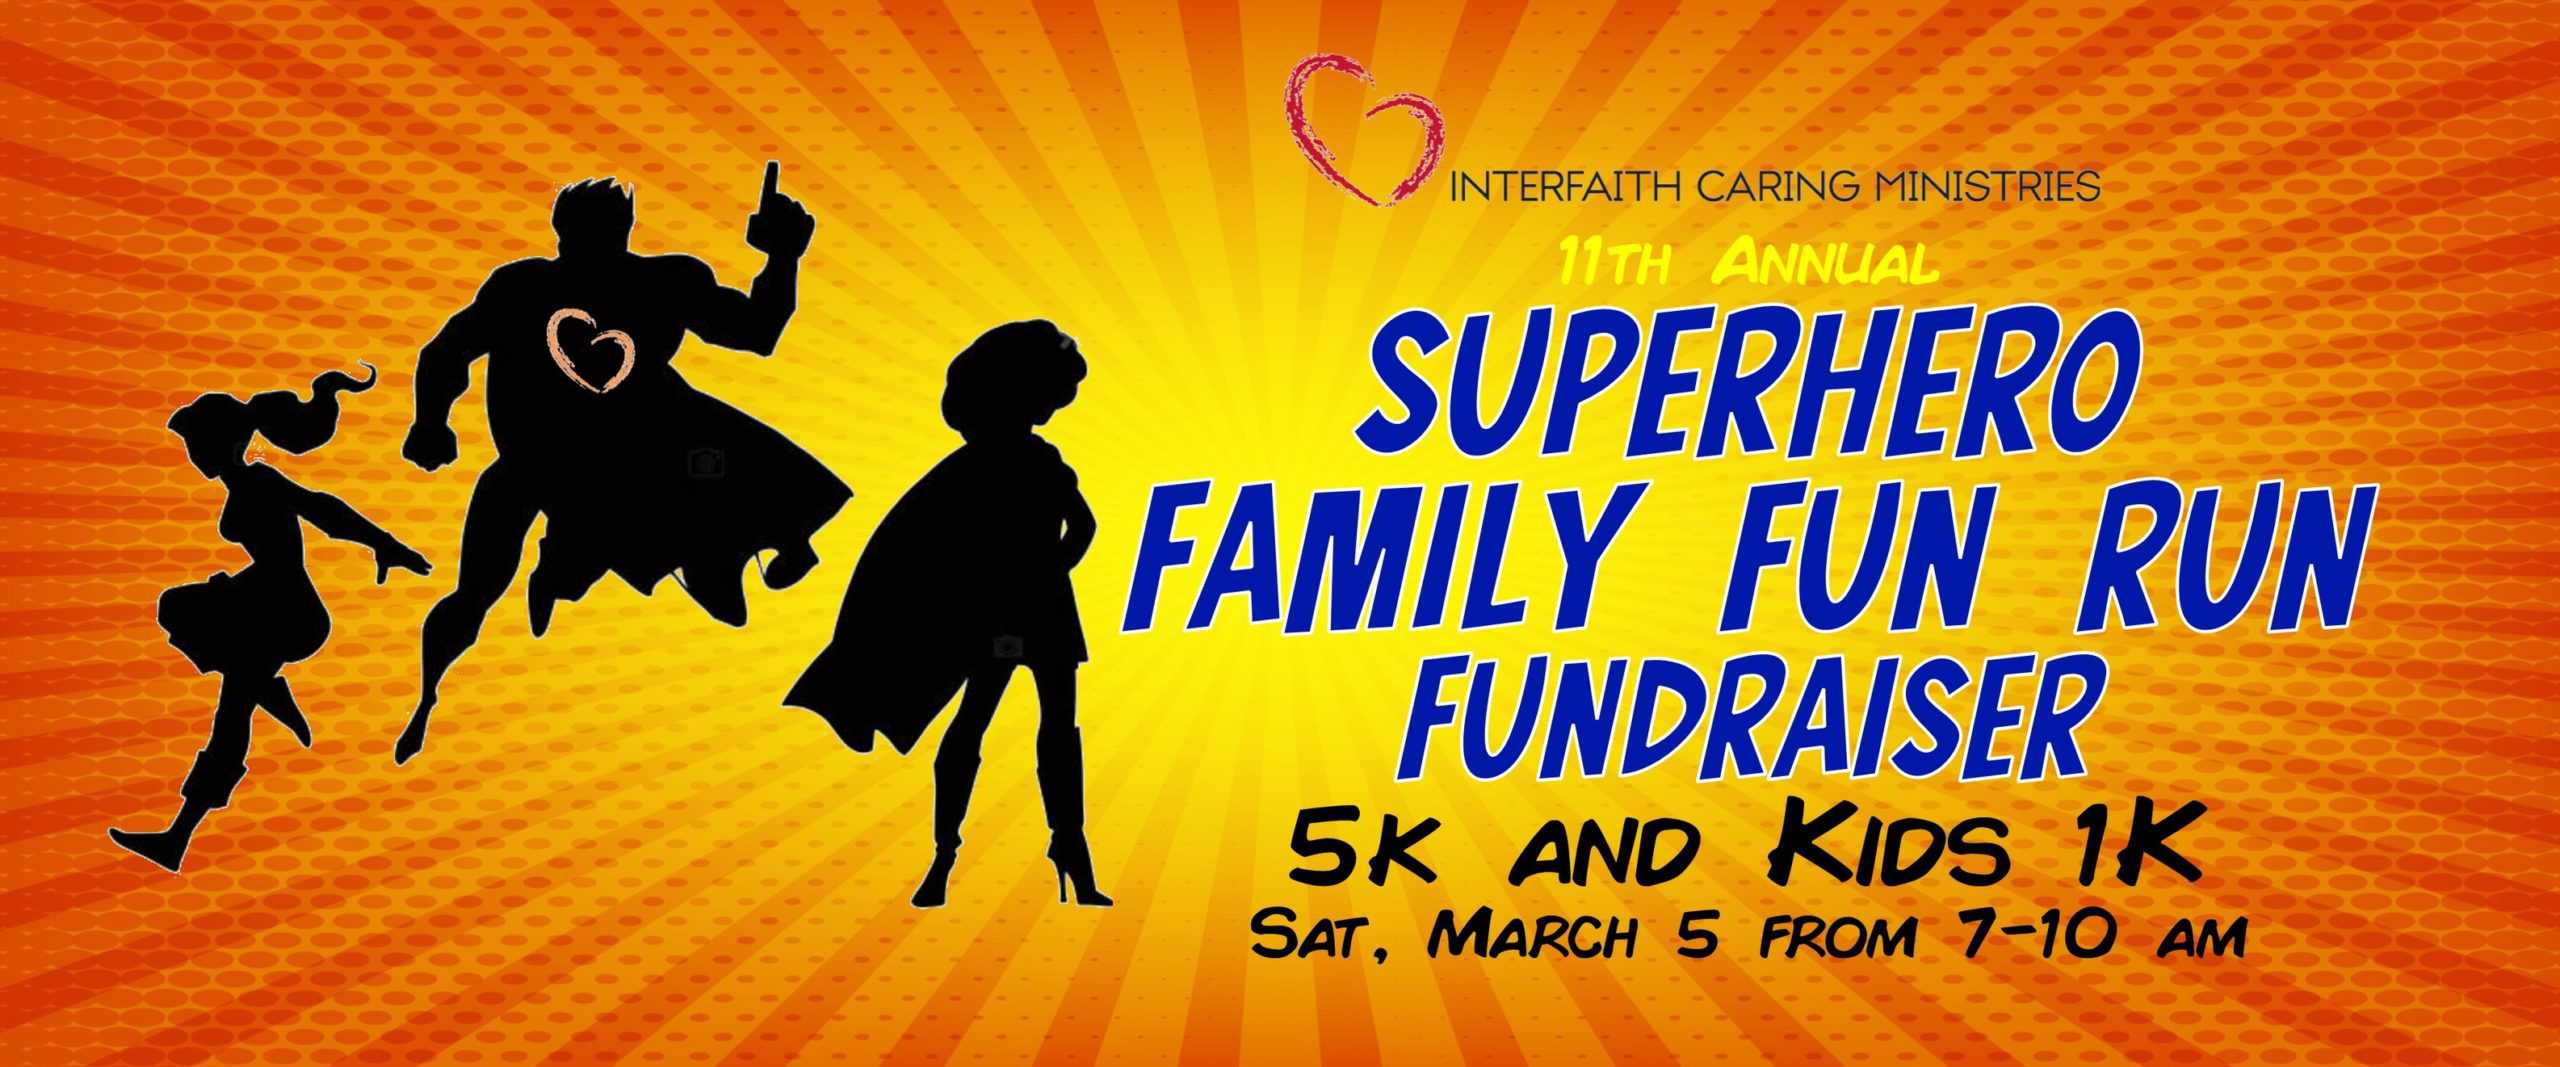 11th Annual Superhero Family 5K and Kids' 1K Fundraiser